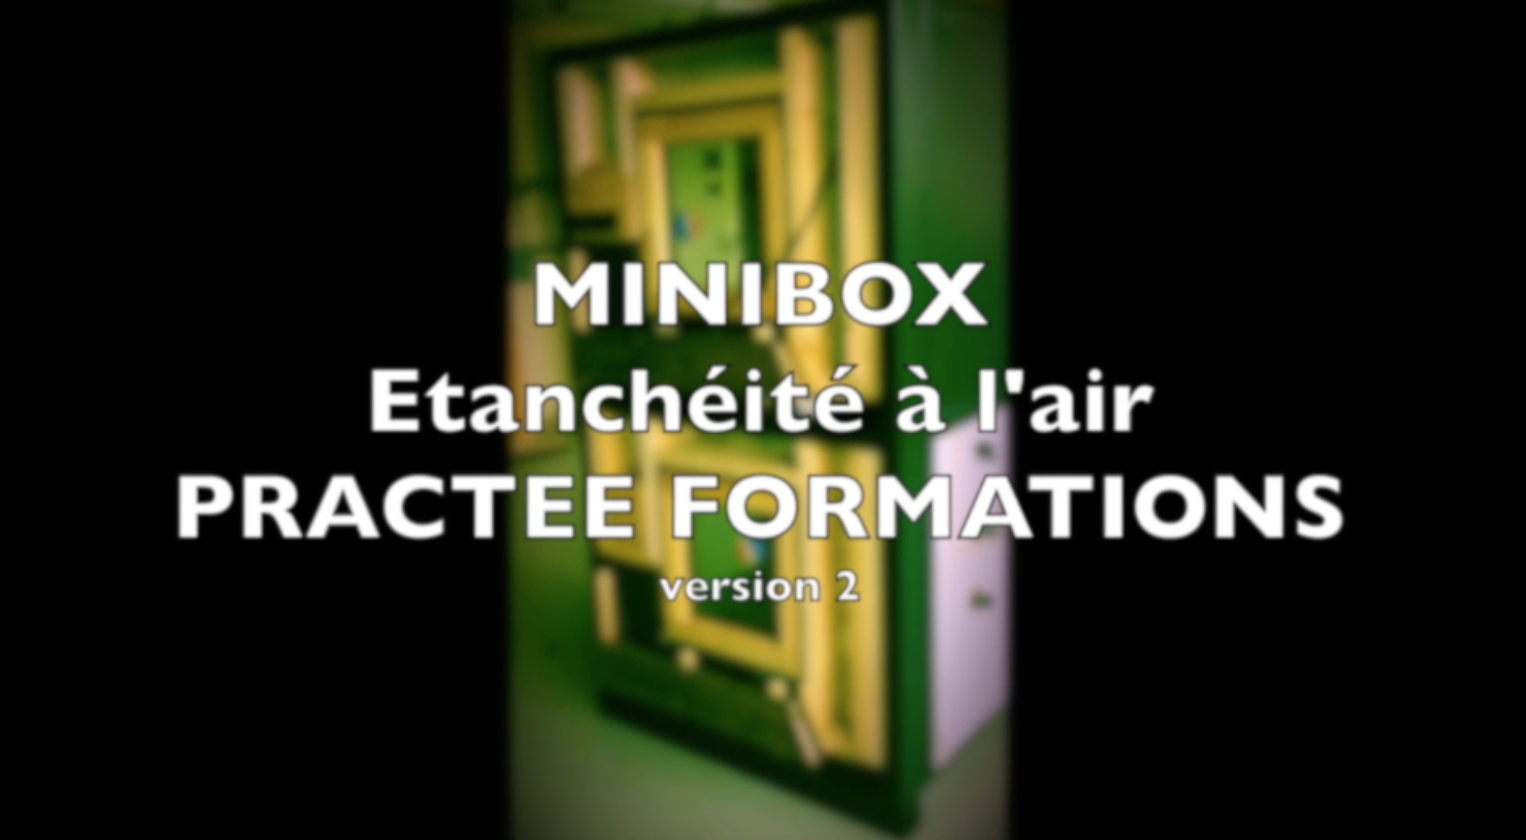 MINIBOX Etanchit lair